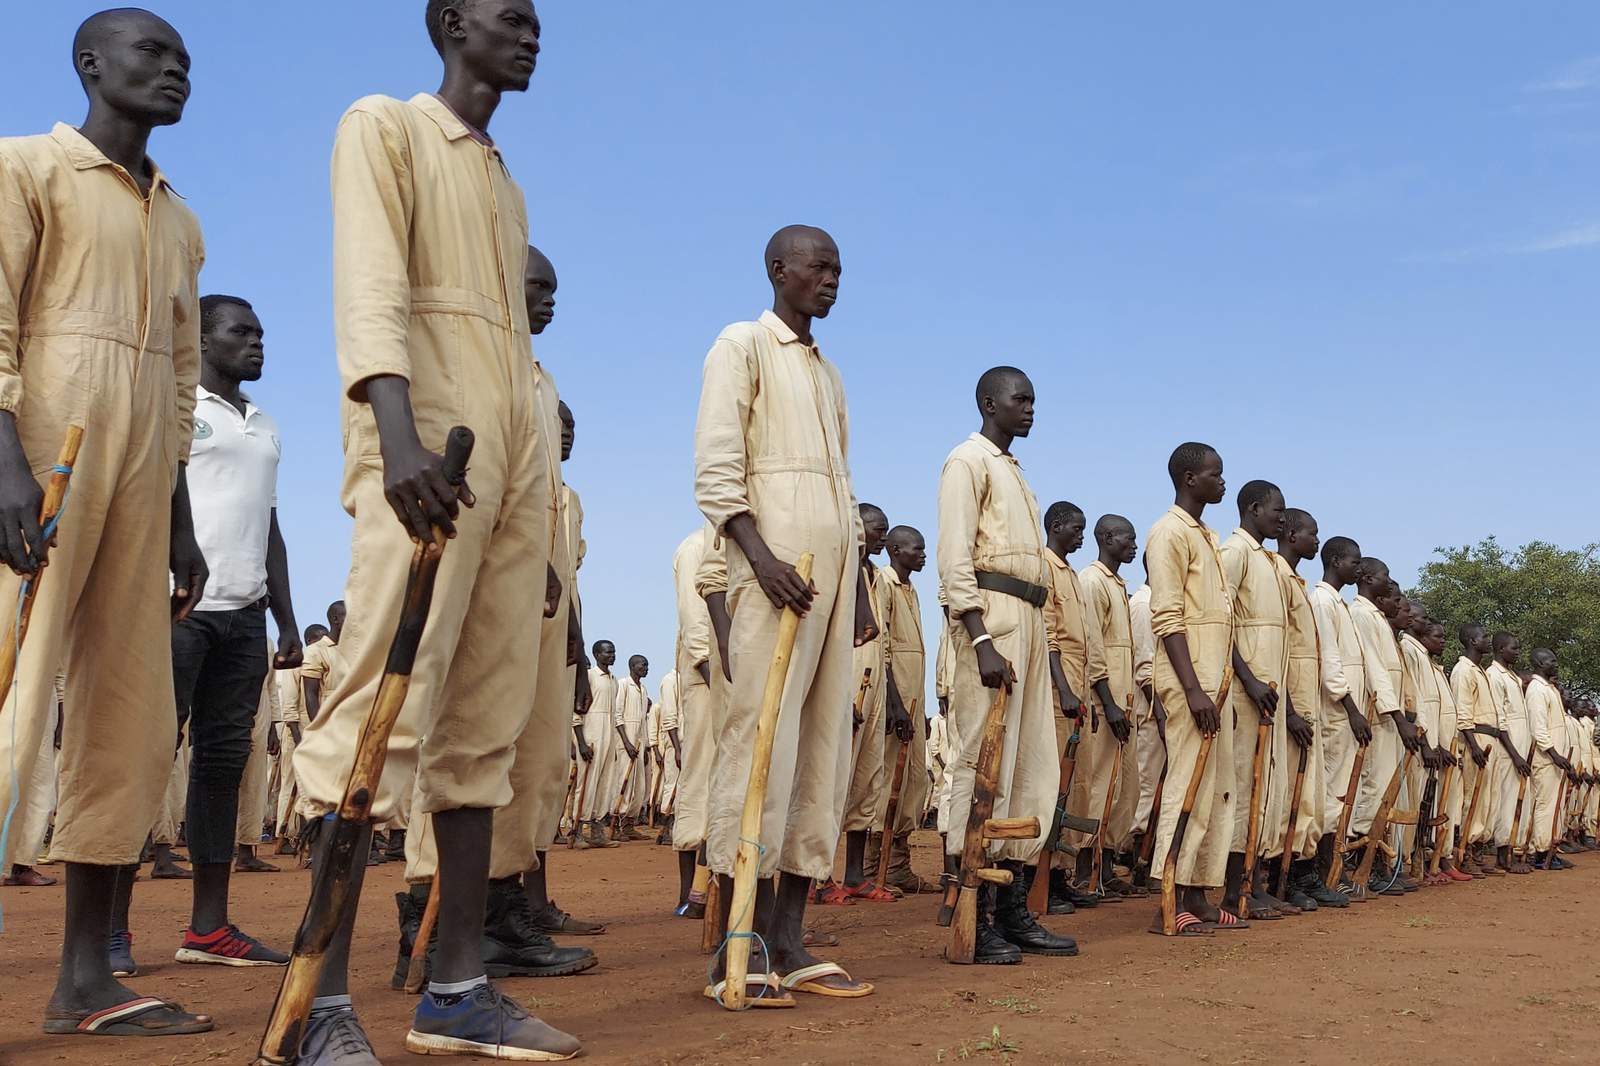 UN report says South Sudan has healed little since civil war